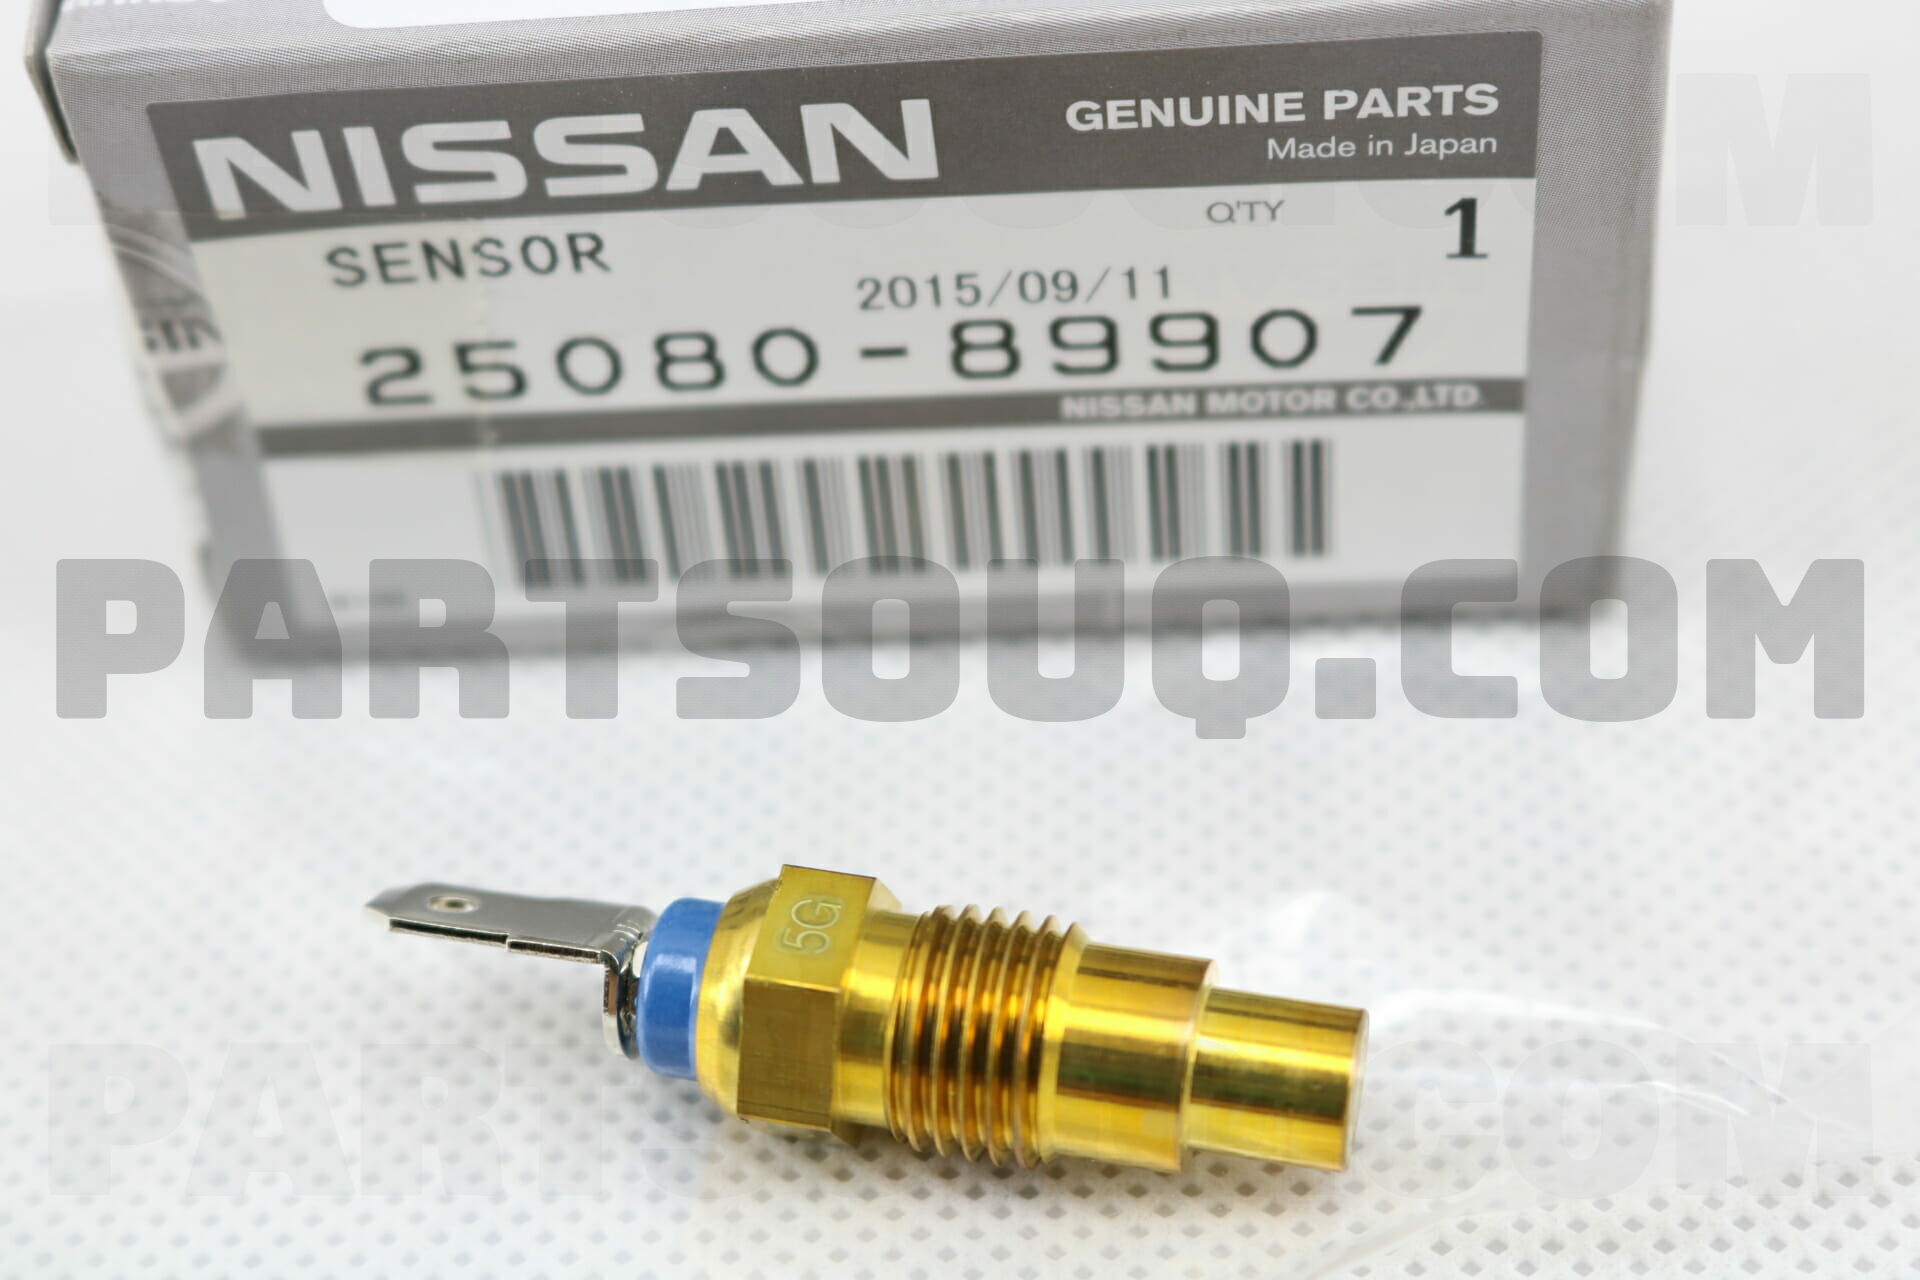 ENGINE COOLANT TEMPERATURE SENSOR 2508089907 | Nissan Parts | PartSouq